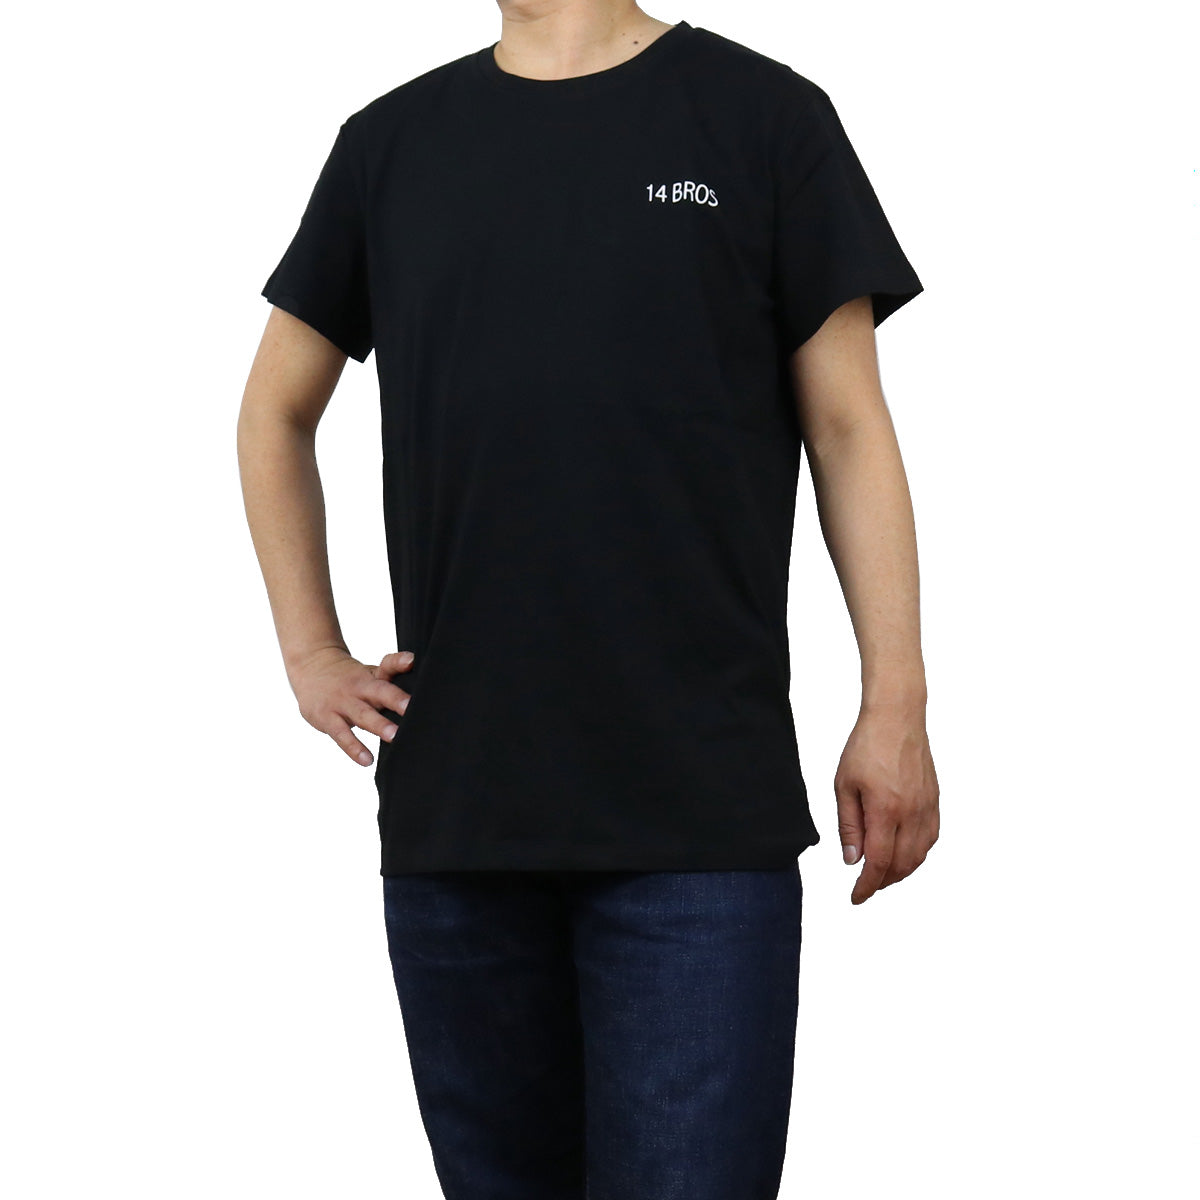 12679A3062B16 Tシャツ NERO ブラック メンズ